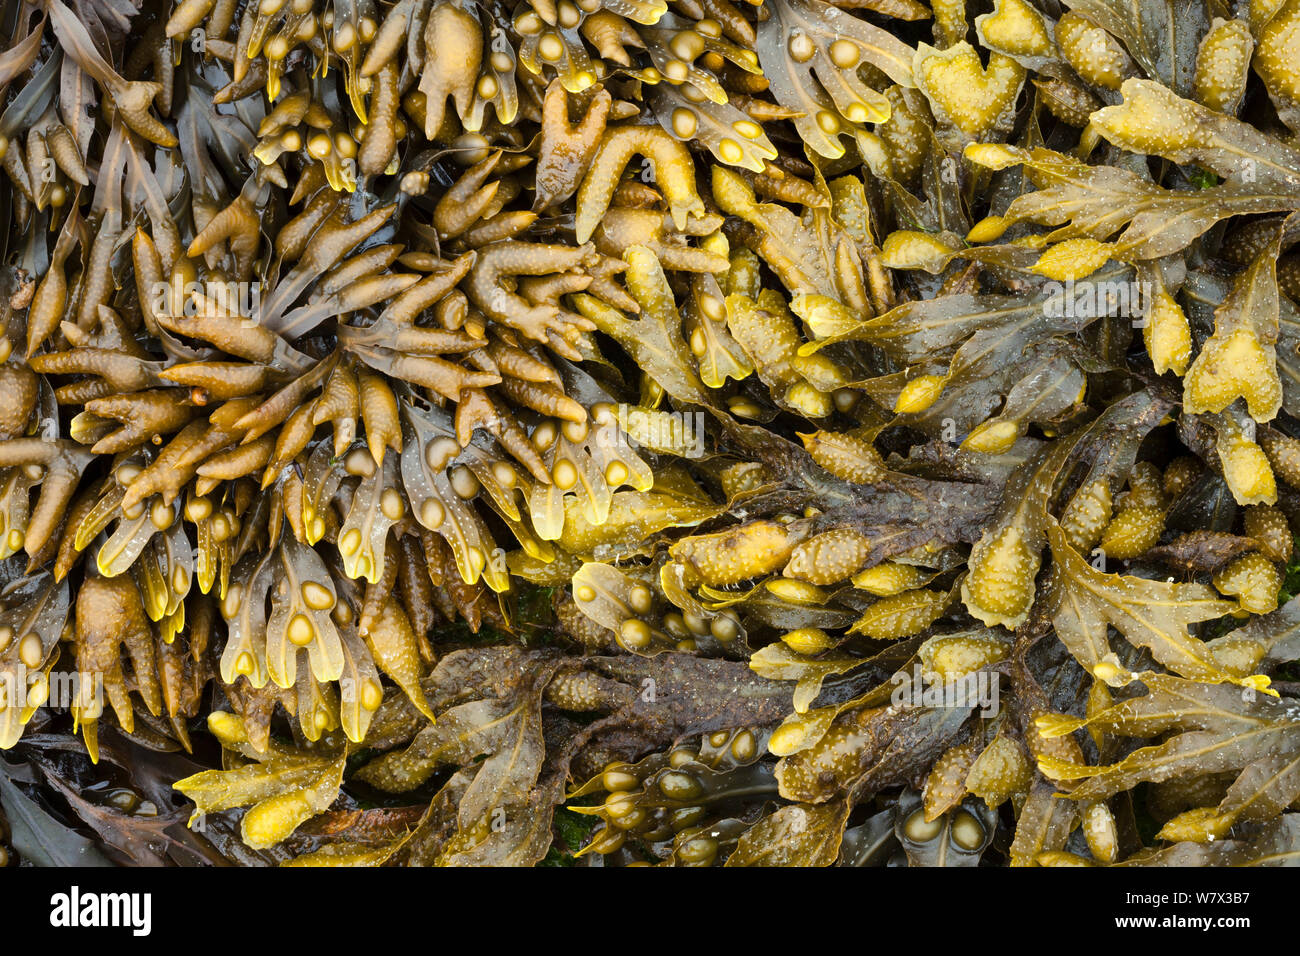 (Pelvetia canaliculata Rack canalisée), fucus vésiculeux (Fucus vesiculosus) et Rack en spirale (Fucus spiralis) L'algue, découverte à marée basse dans la zone côtière. Isle of Mull, Scotland, UK. De juin. Banque D'Images